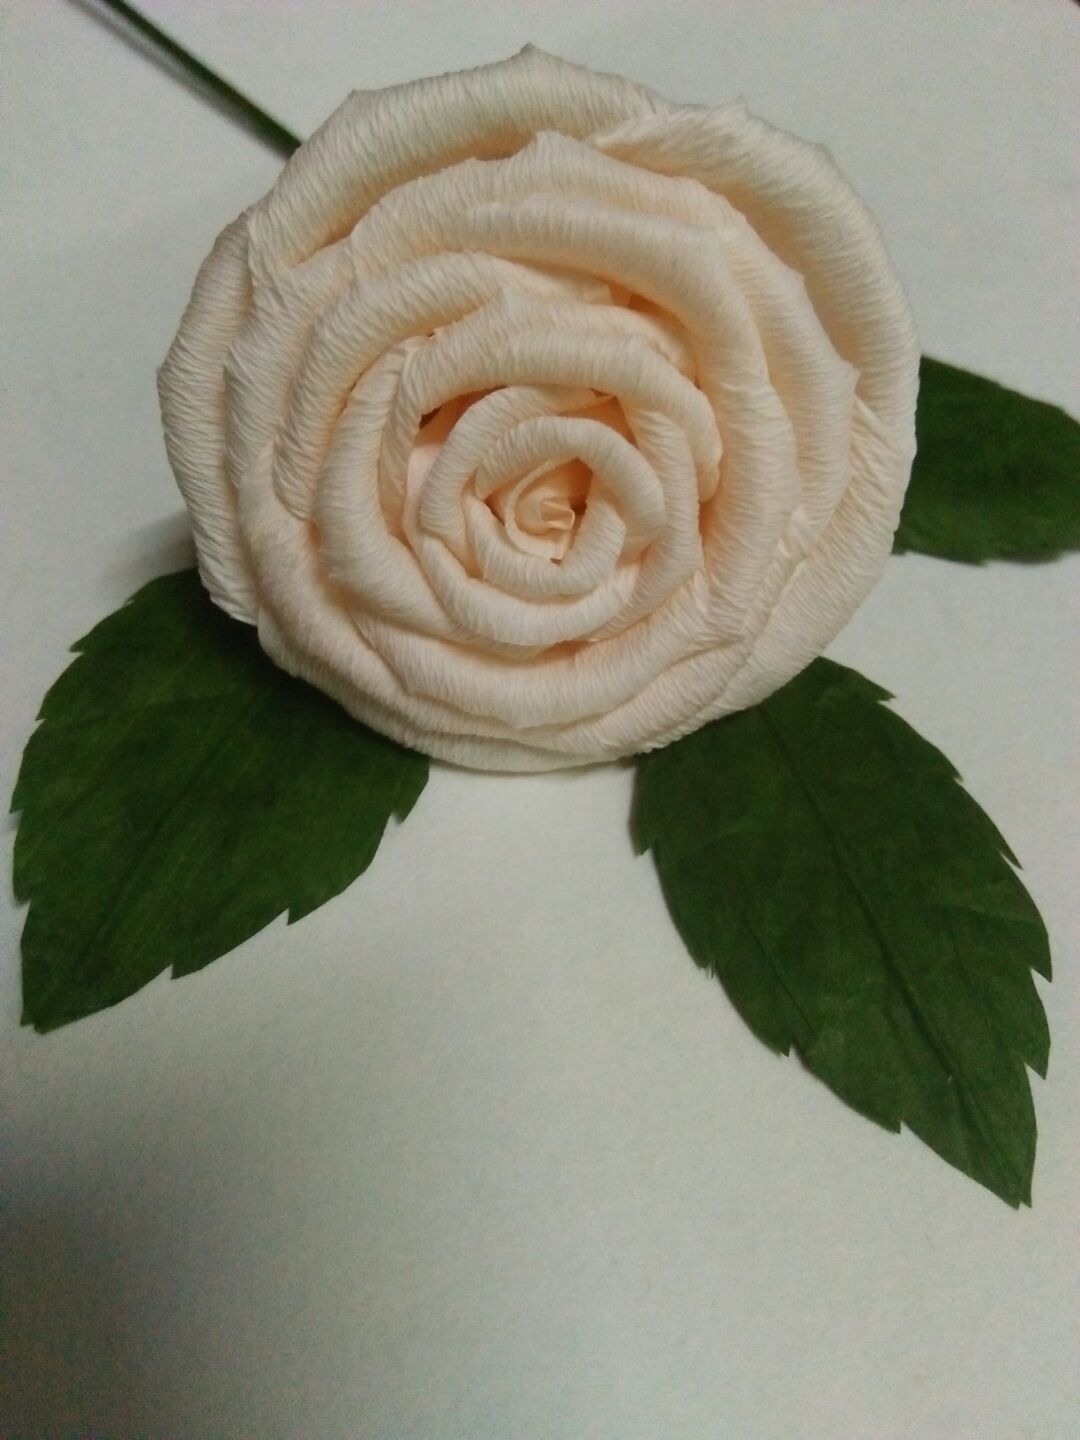 纸藤可塑性强，做出来的玫瑰一般都比较逼真，我自己做了教程，和大家分享，做的不好的地方还请多多关照。